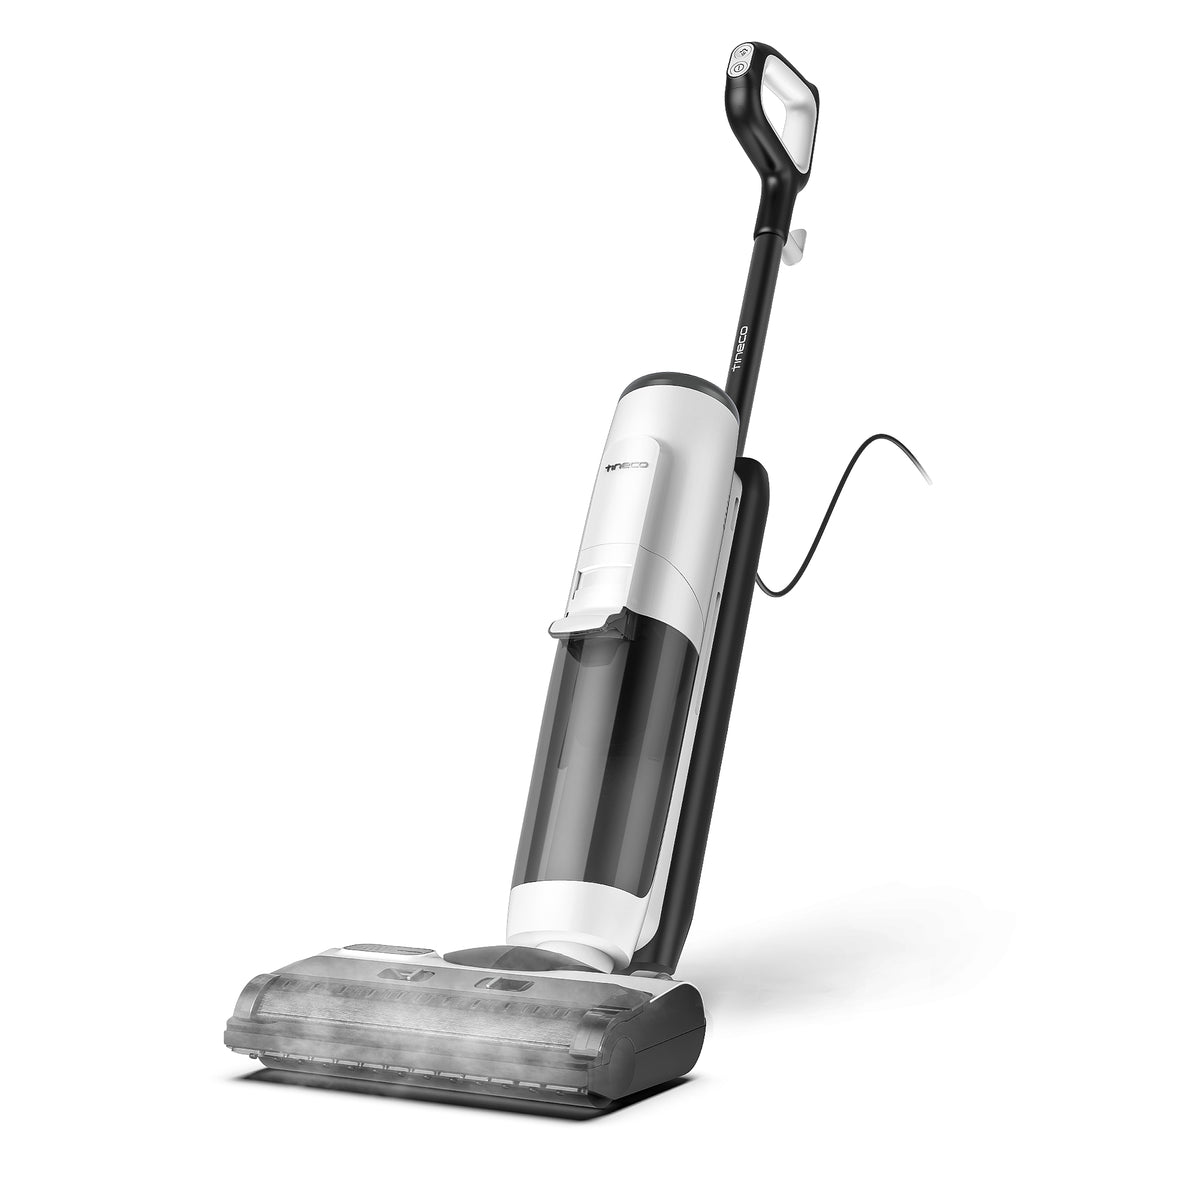 OApier S6 Steam Mop – light-n-easy